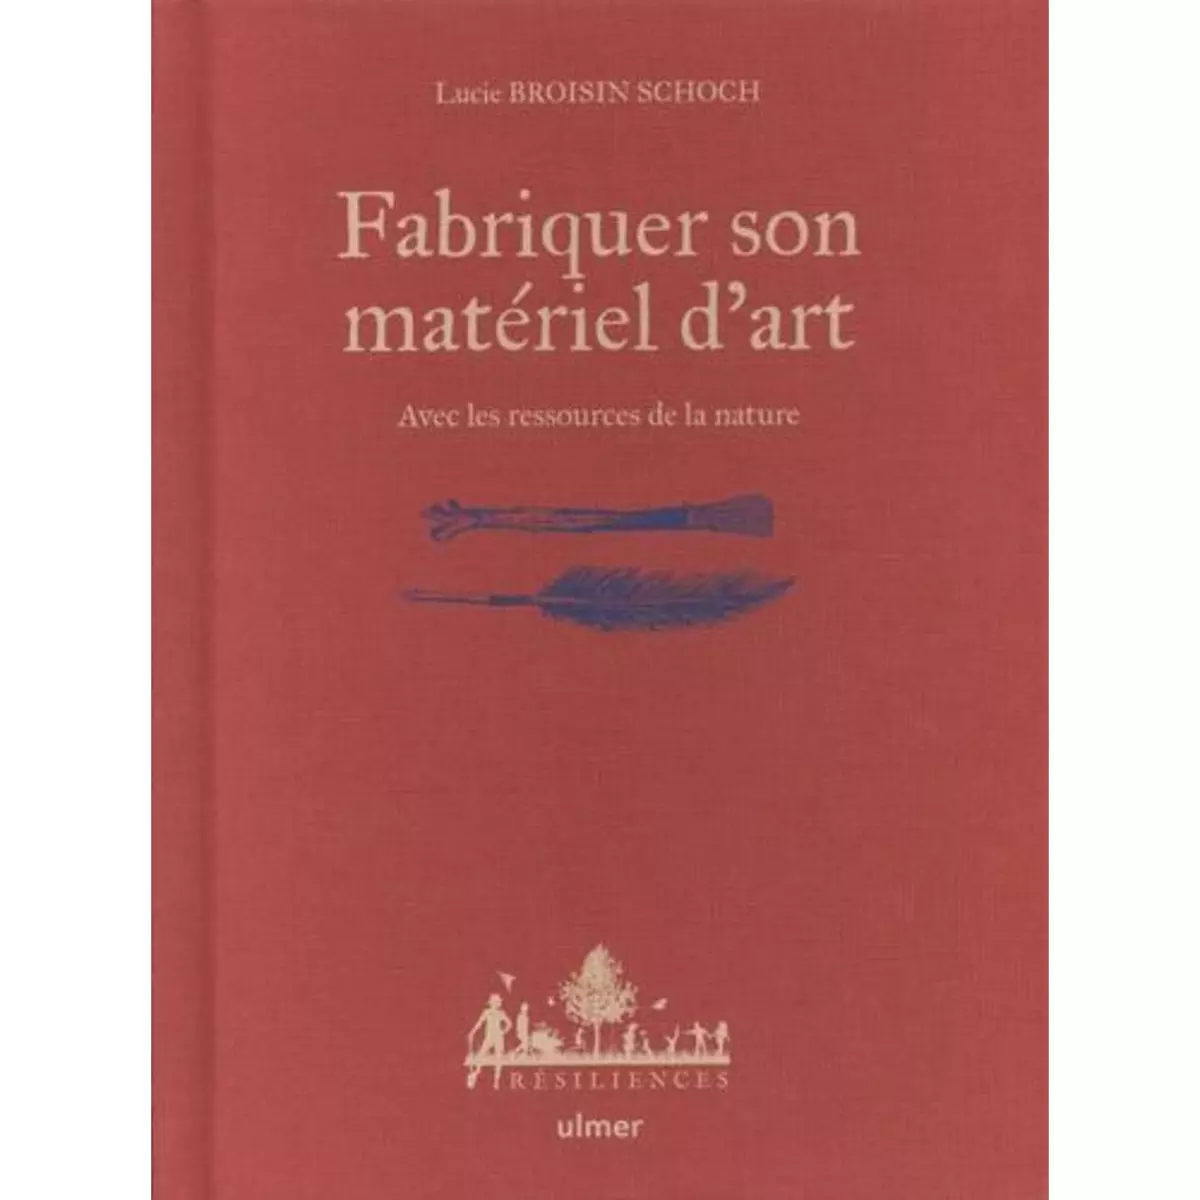  FABRIQUER SON MATERIEL D'ART. AVEC LES RESSOURCES DE LA NATURE, Broisin Schoch Lucie